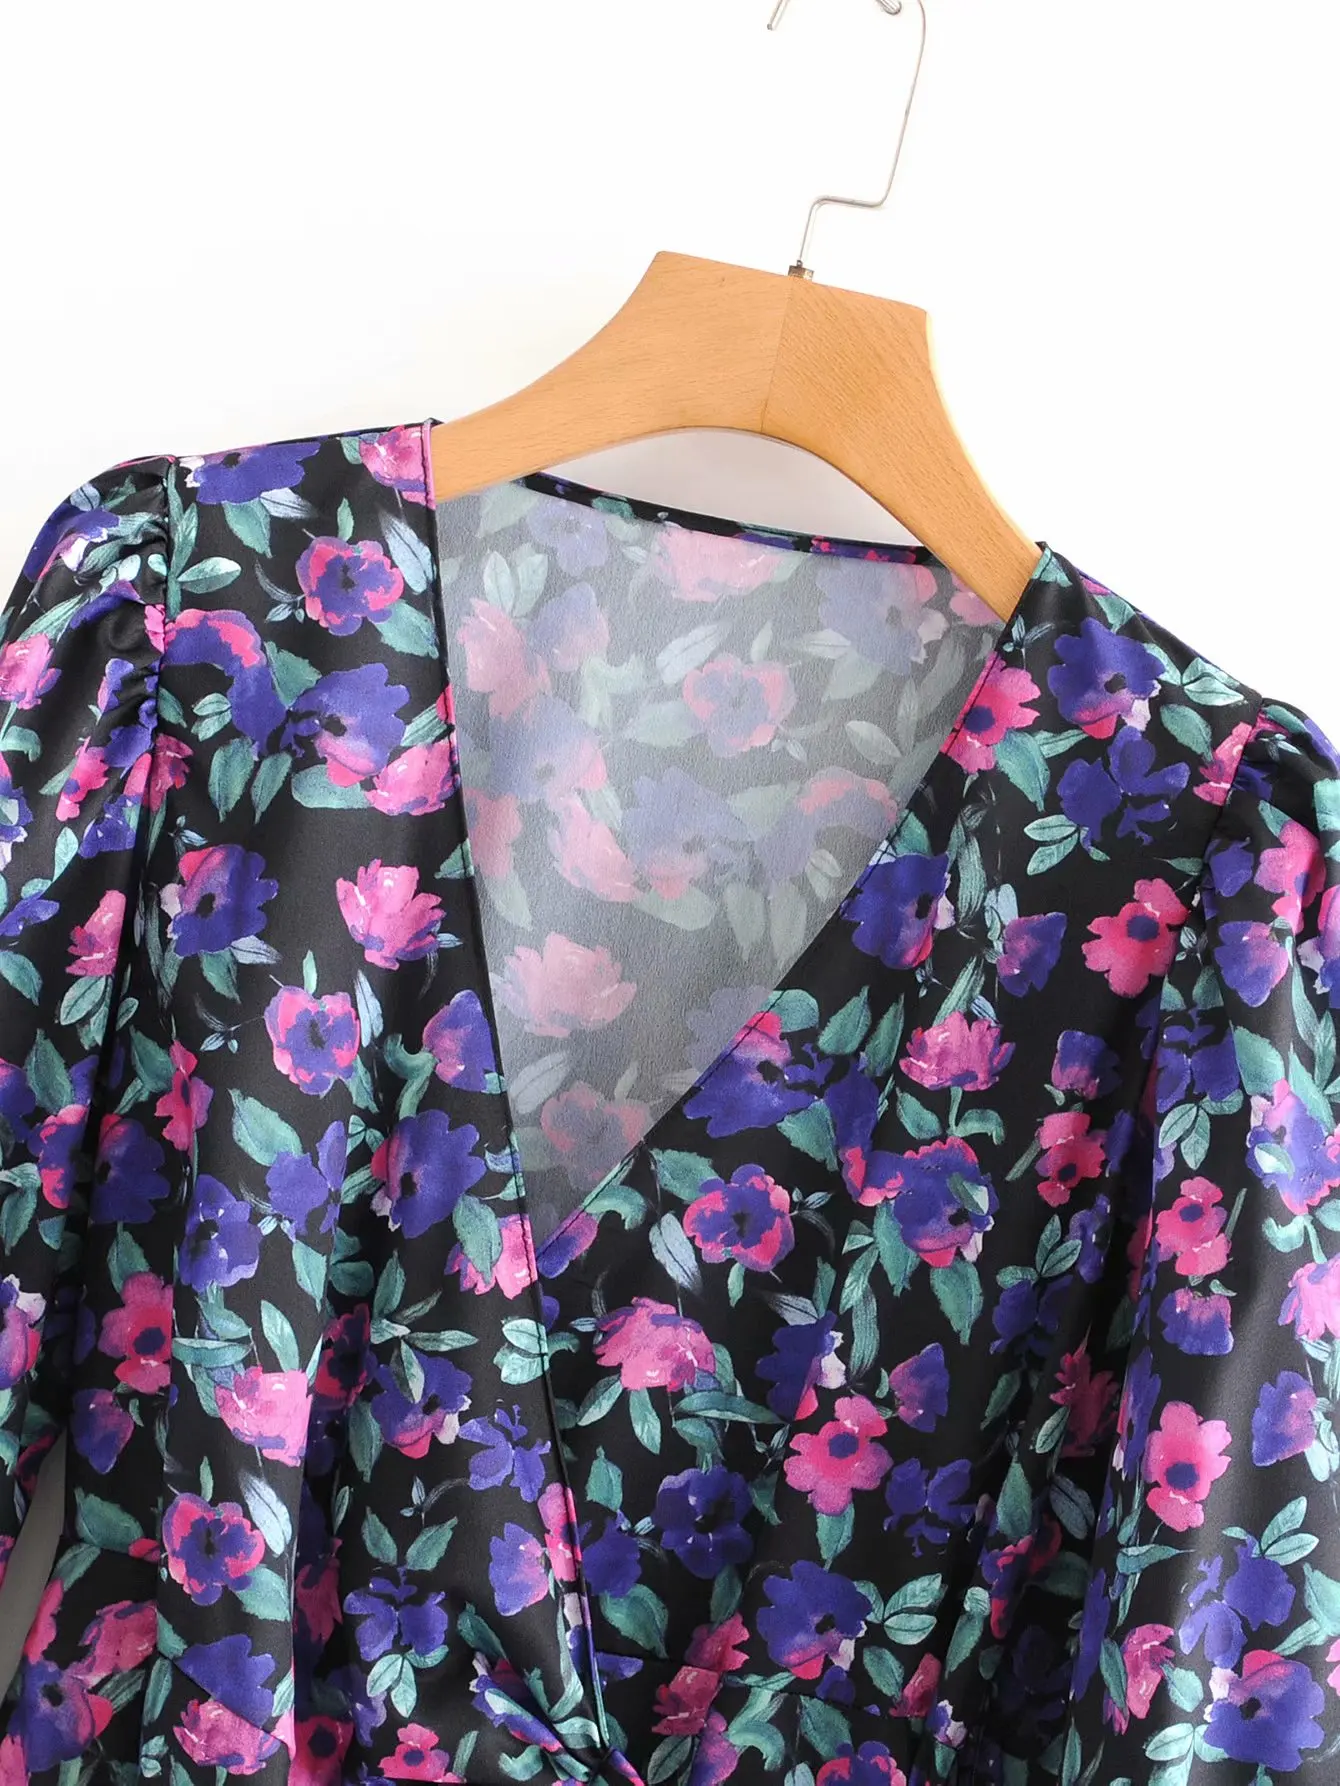 VOGUEIN Новое Женское ретро платье с длинным рукавом с цветочным принтом и v-образным вырезом фиолетовое Асимметричное мини-платье